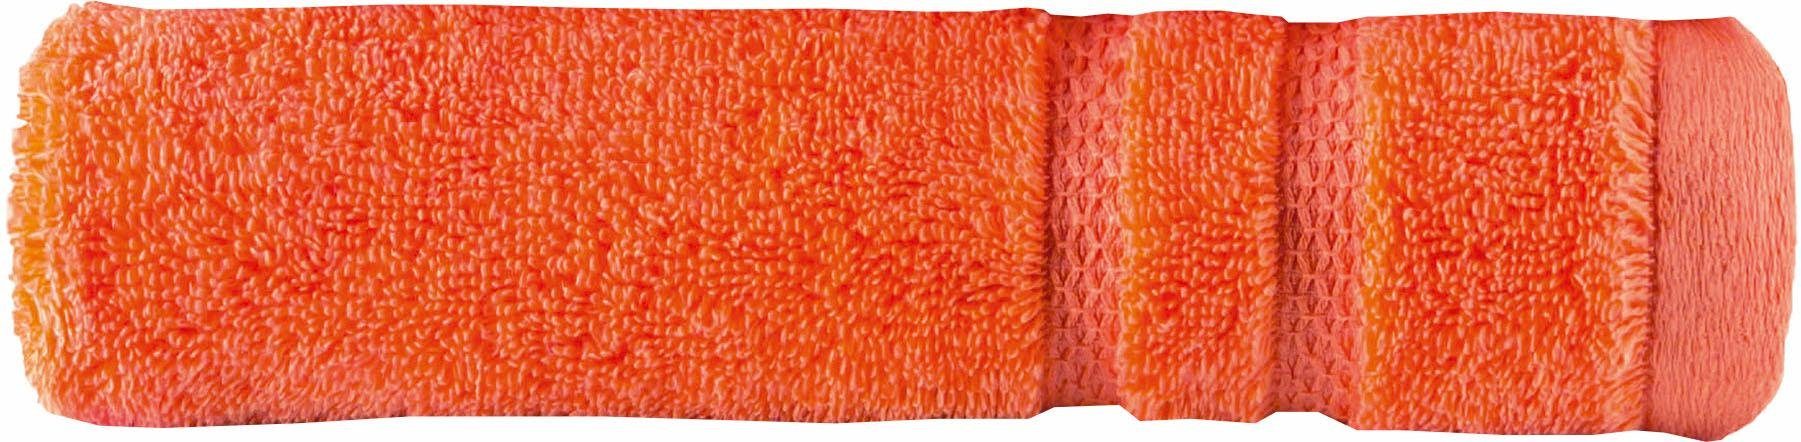 saugfähig, extrem Micro Walkfrottee Touch, (1-St), reine Egeria Baumwolle orange Programm Streifenbordüre, Badetuch mit Uni